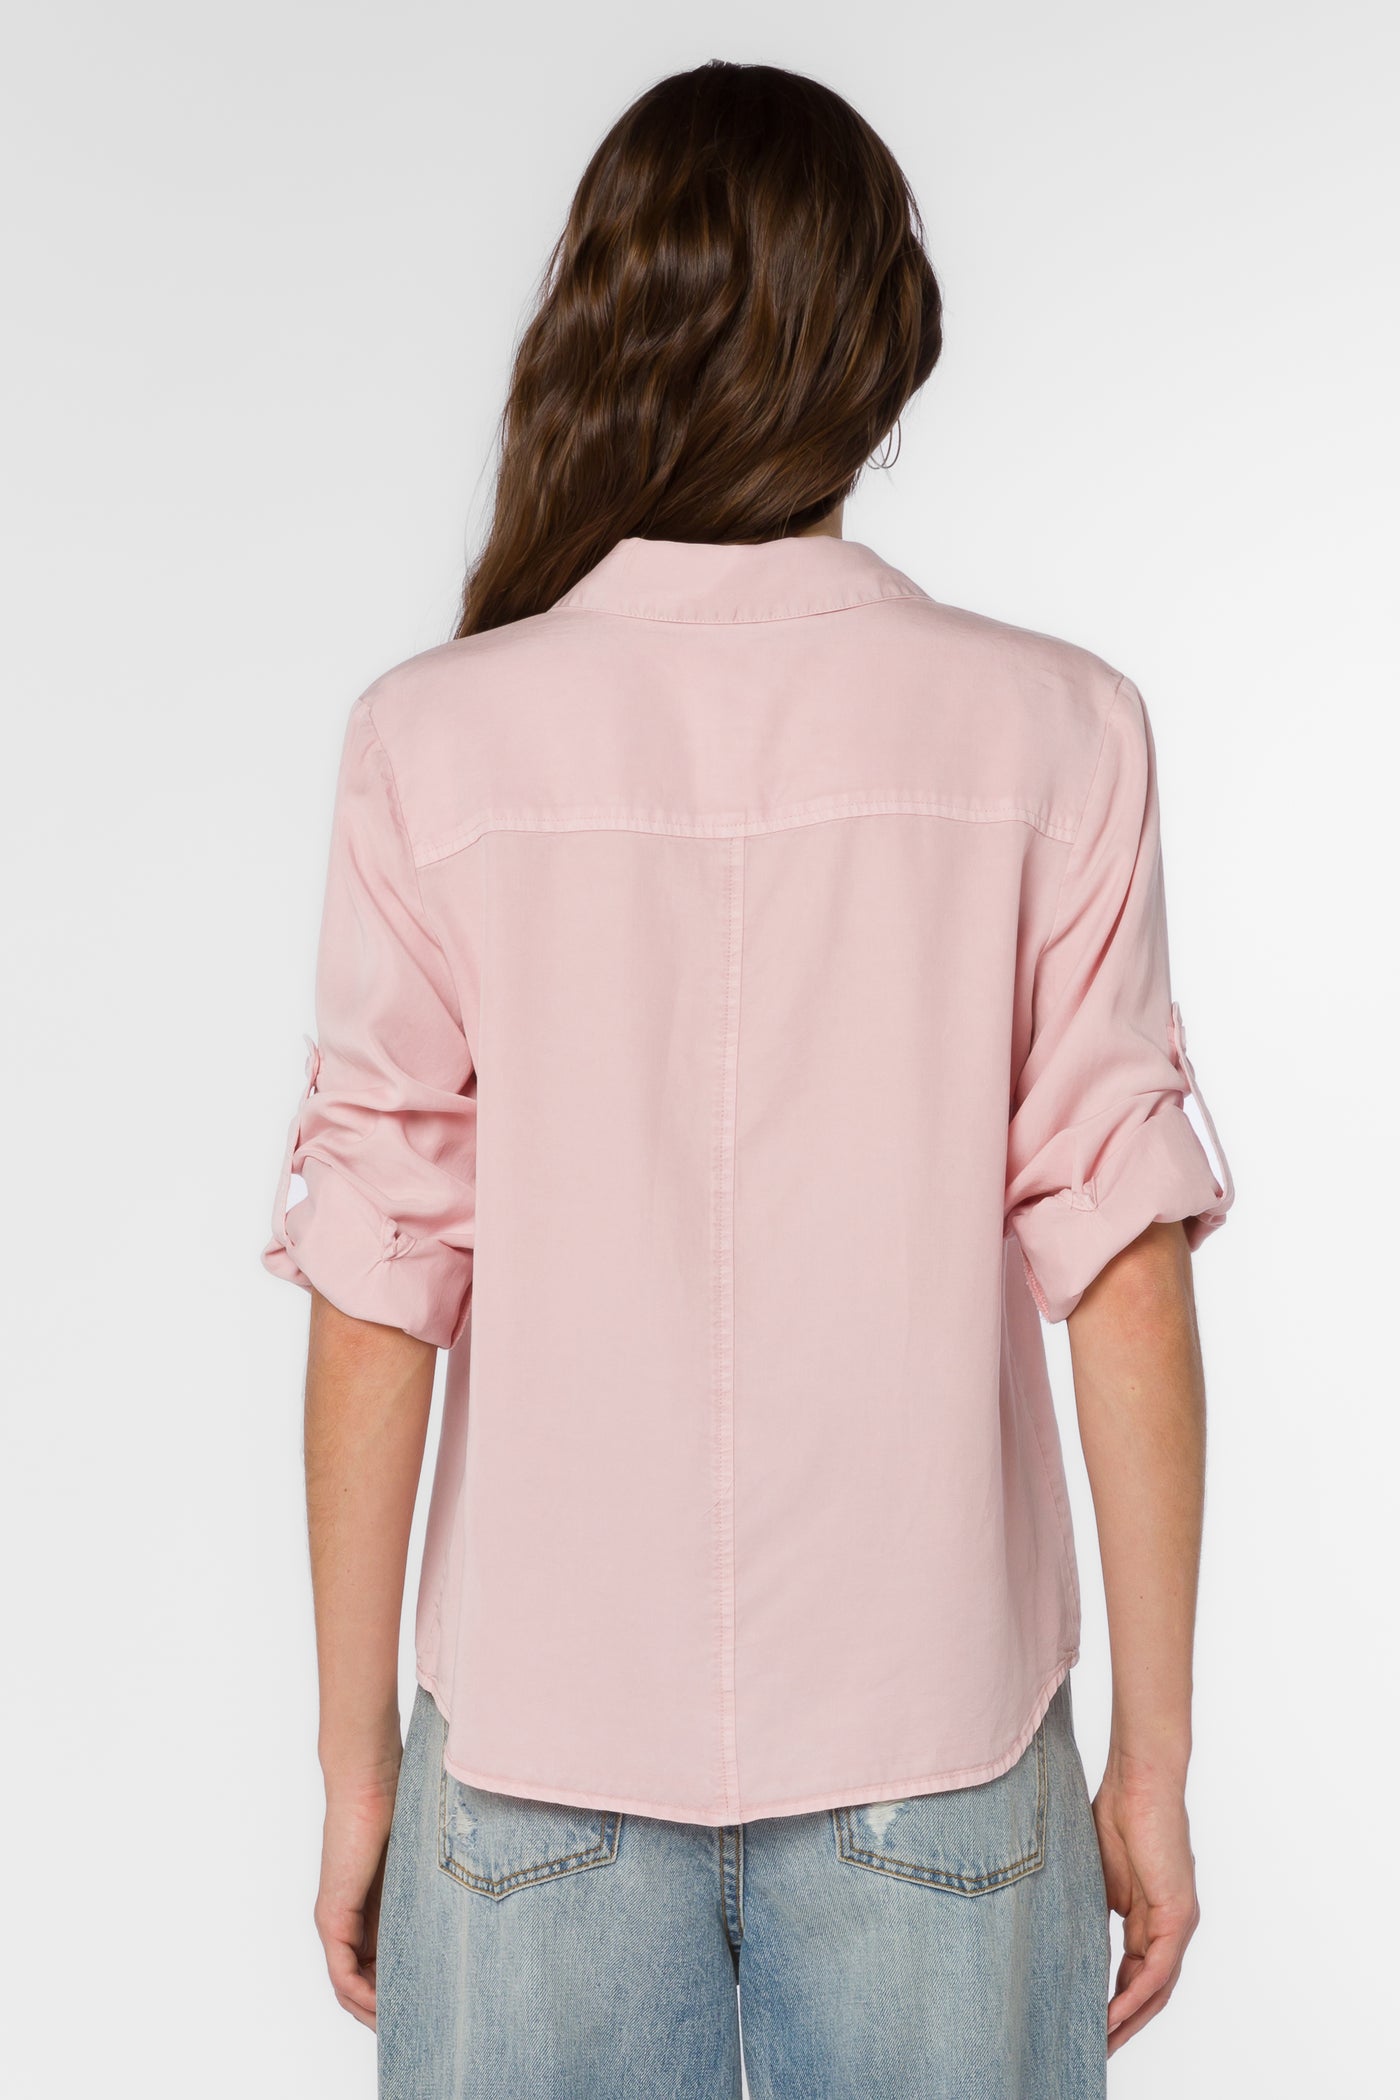 Lucia Pale Pink Shirt - Tops - Velvet Heart Clothing